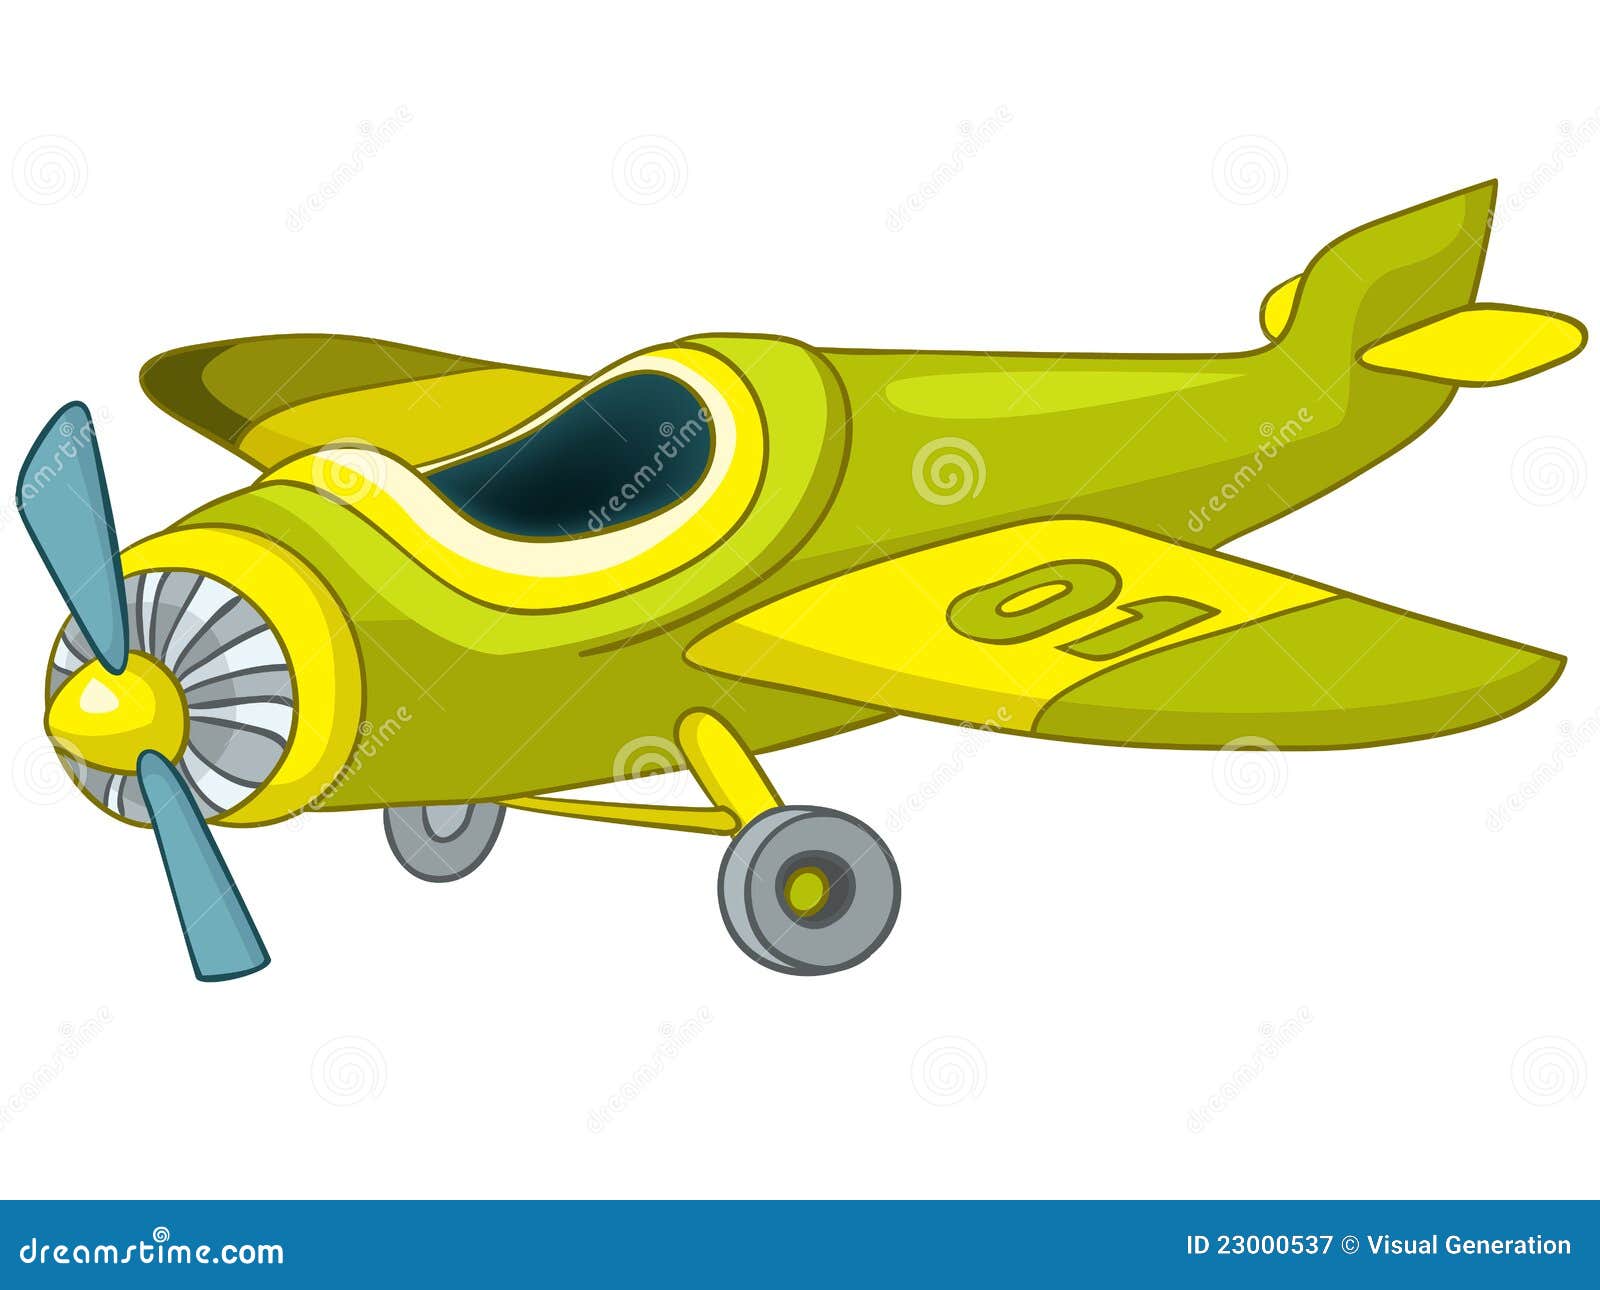 Военный самолет мультяшка для детей